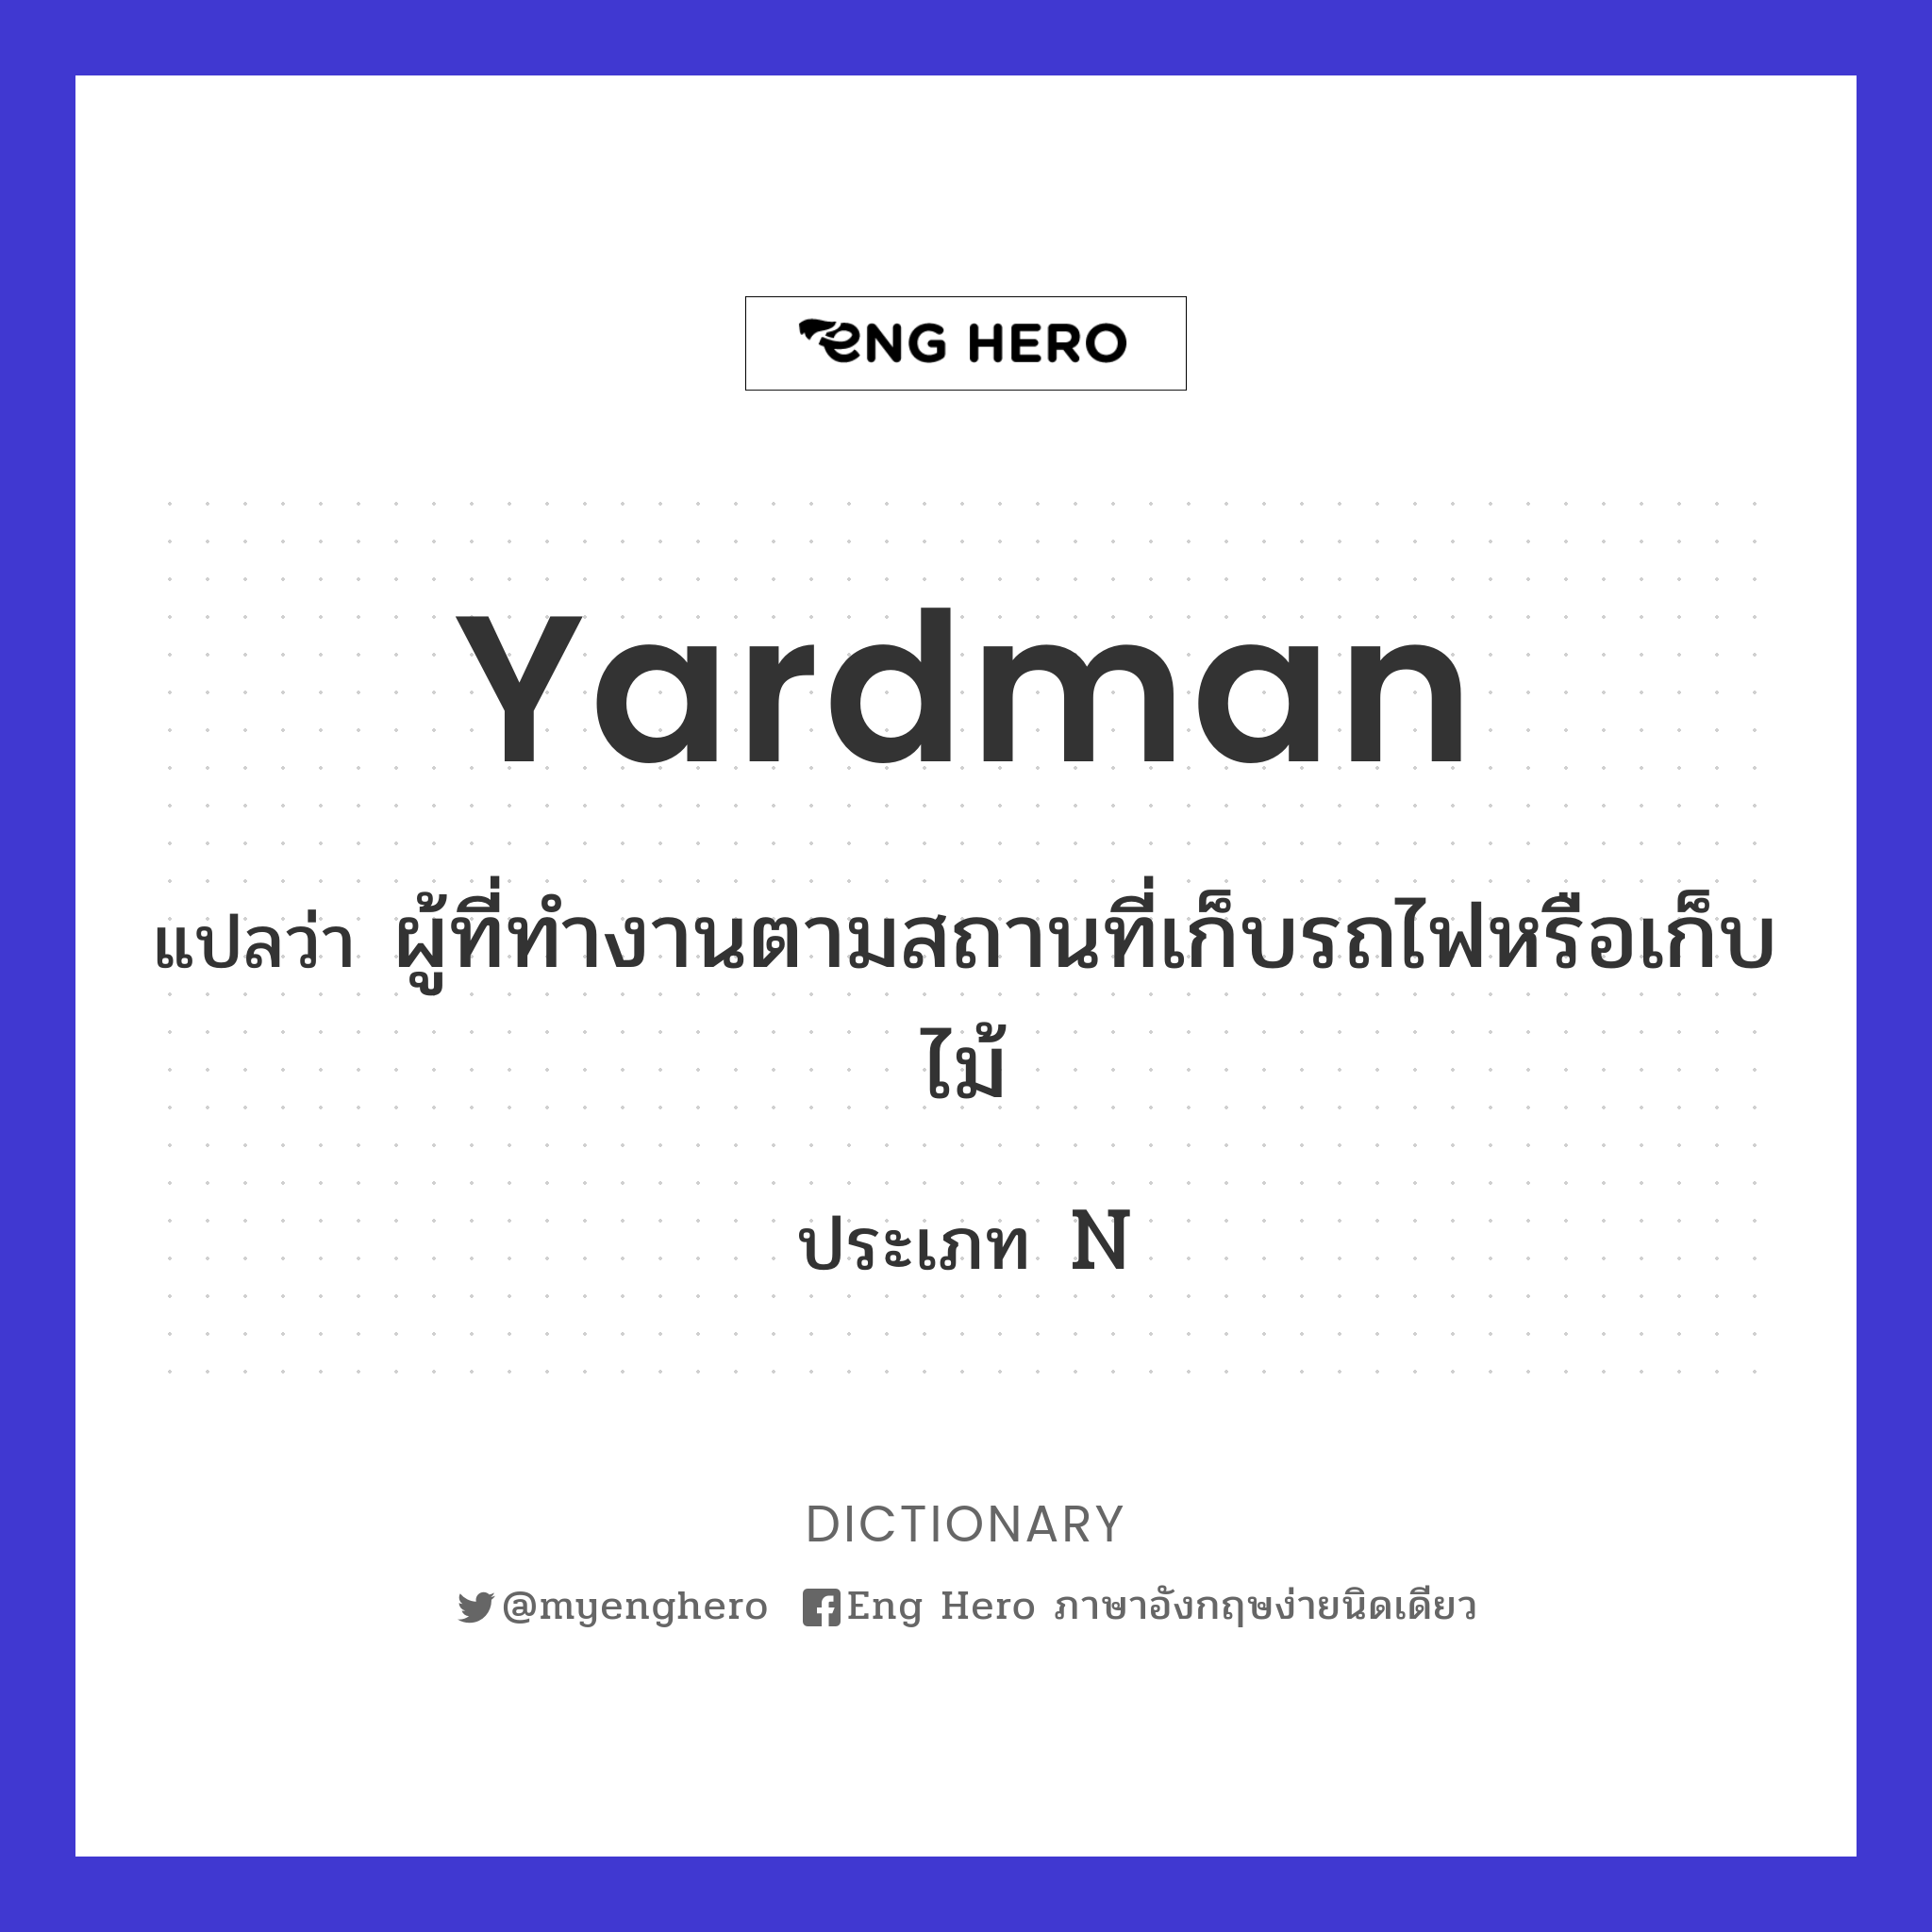 yardman